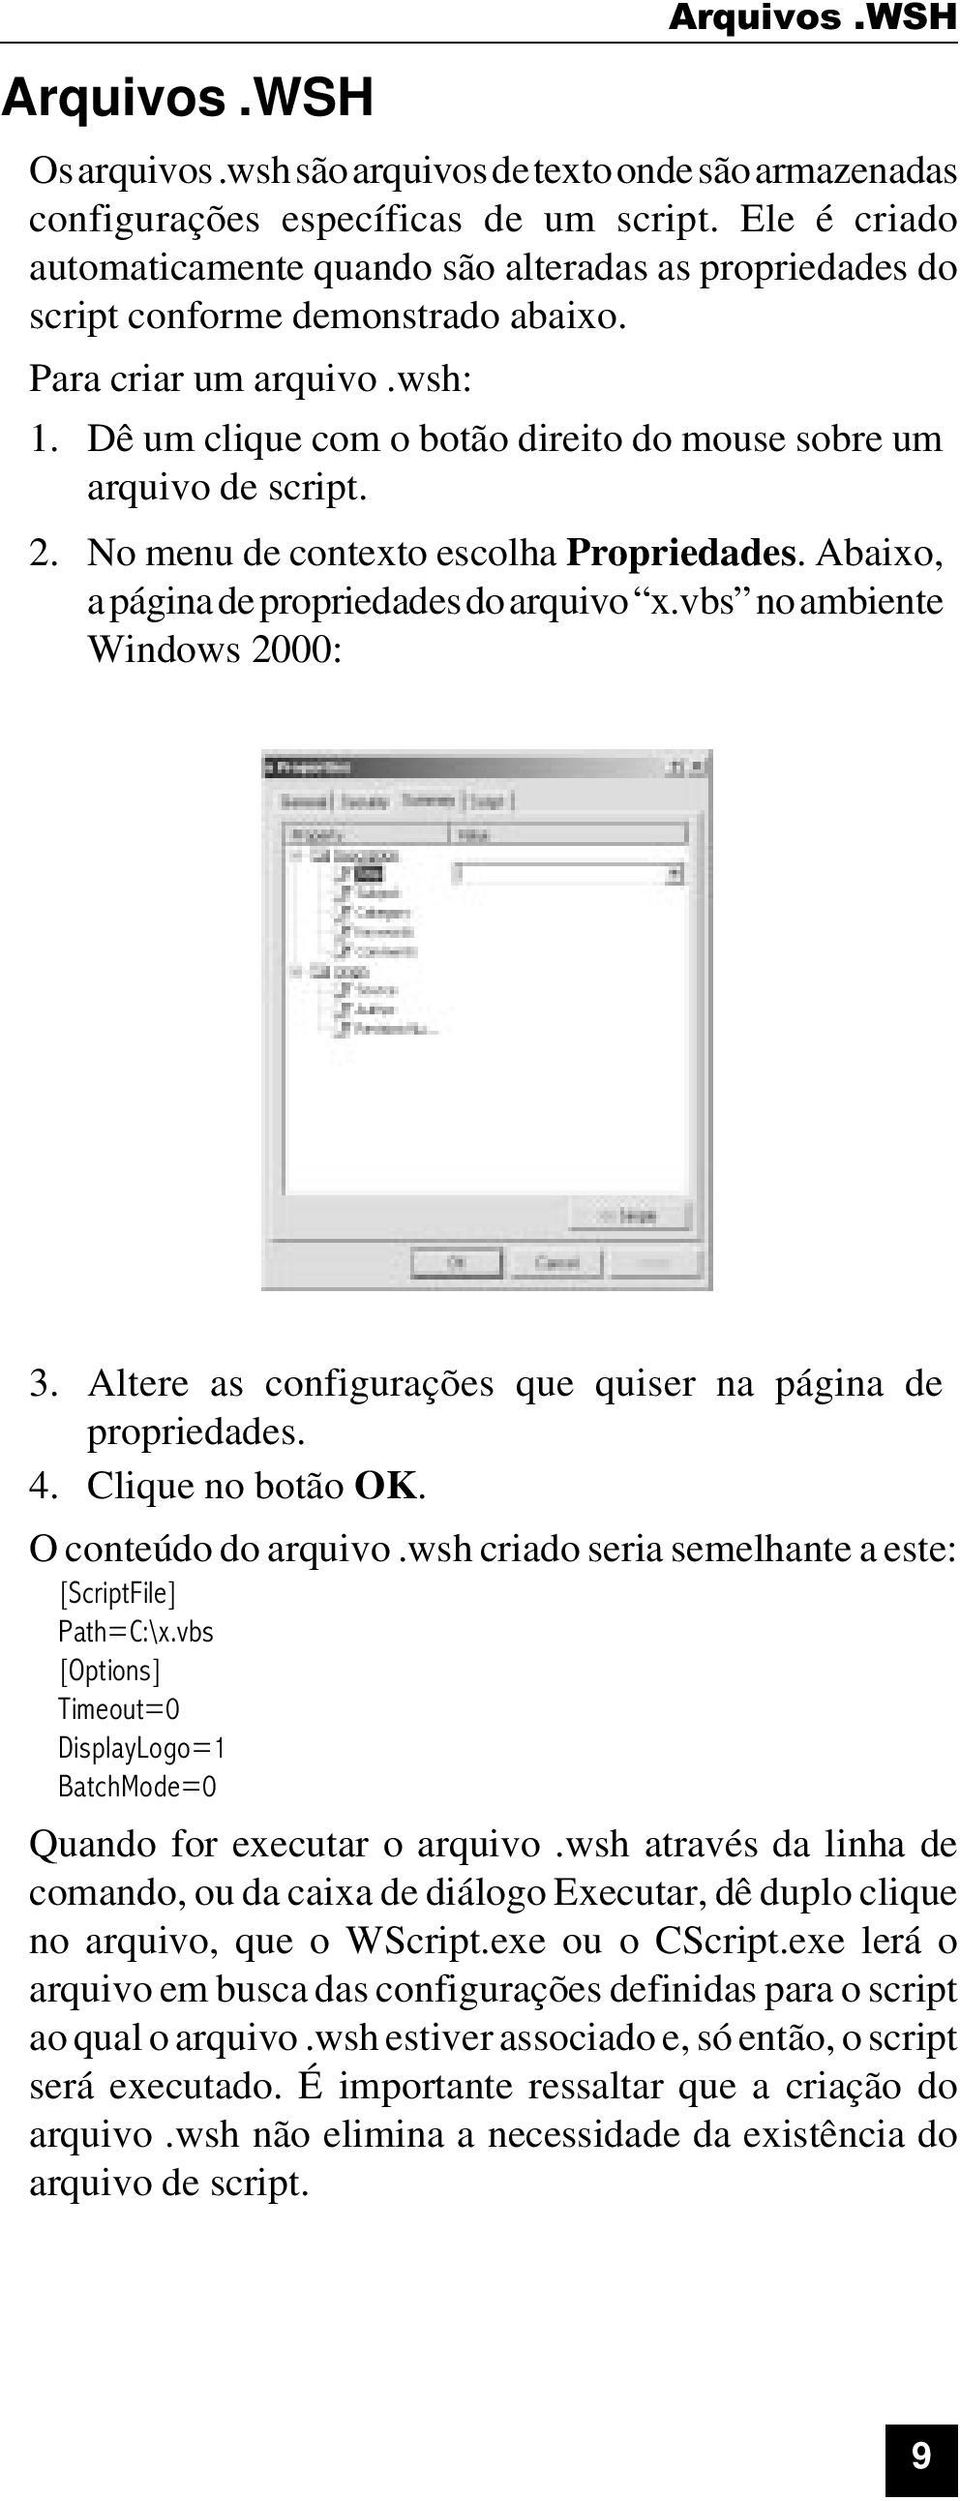 Dê um clique com o botão direito do mouse sobre um arquivo de script. 2. No menu de contexto escolha Propriedades. Abaixo, a página de propriedades do arquivo x.vbs no ambiente Windows 2000: 3.